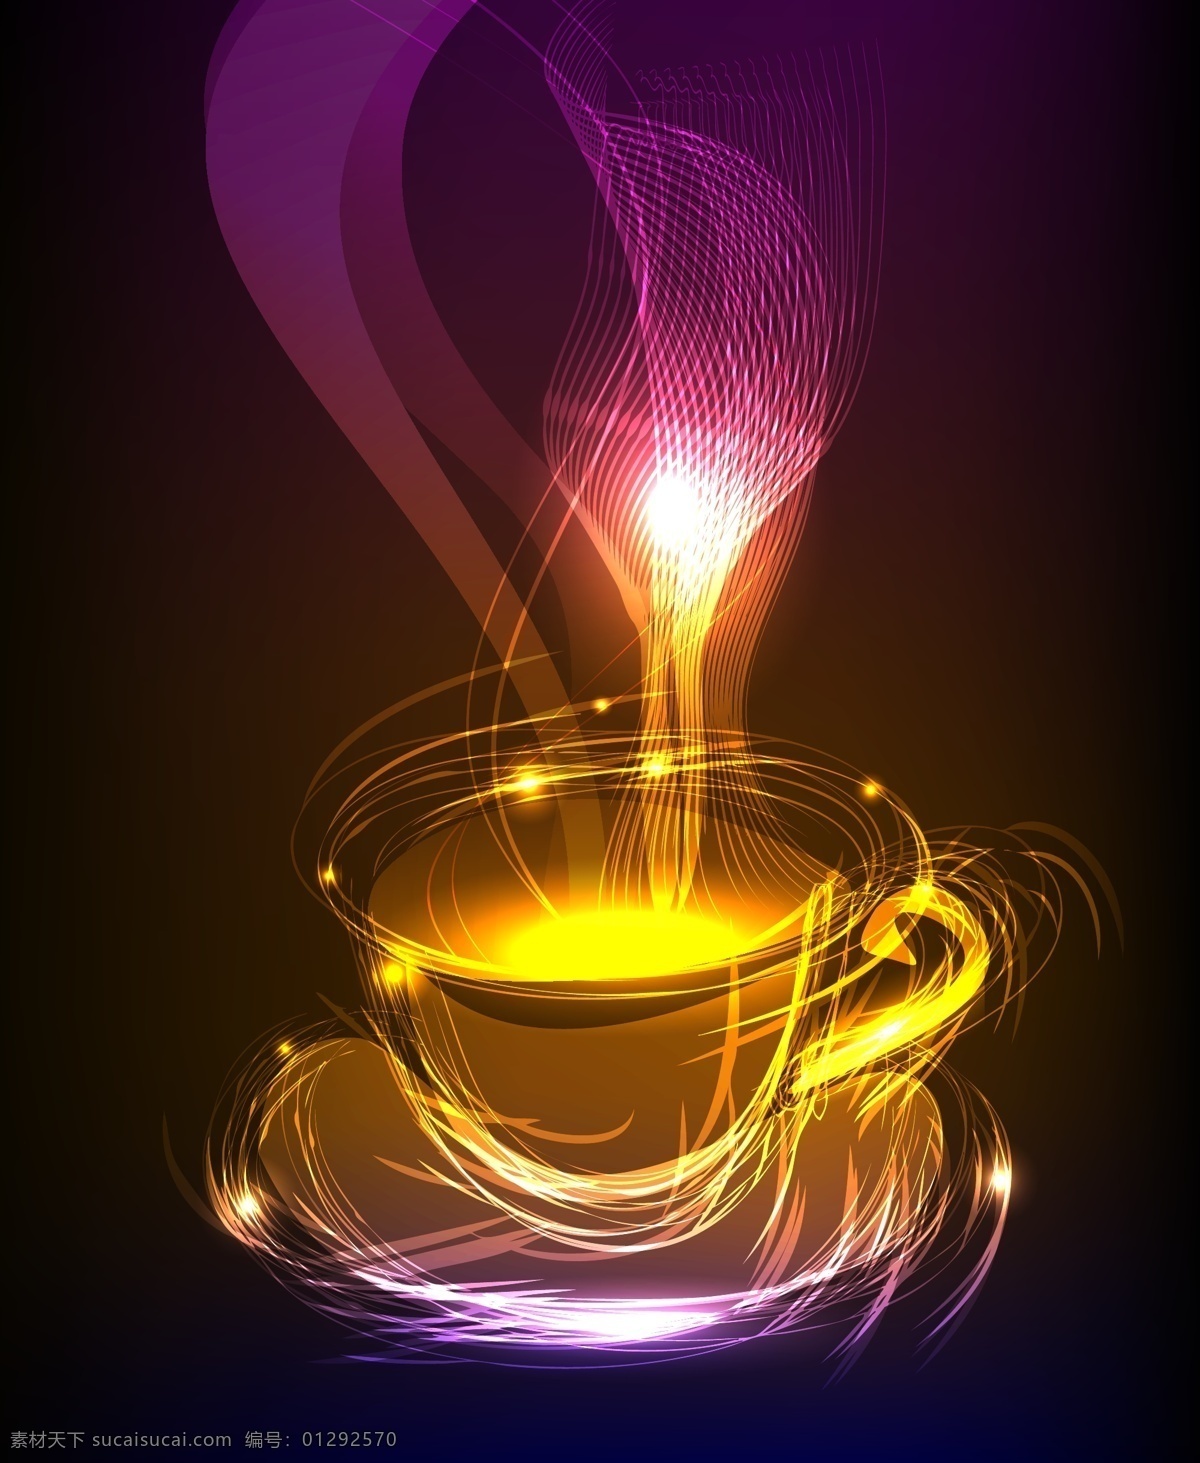 超酷 幻彩 光线 图形 杯子 背景 黑色 咖啡杯 浪漫 梦幻 矢量素材 烟雾